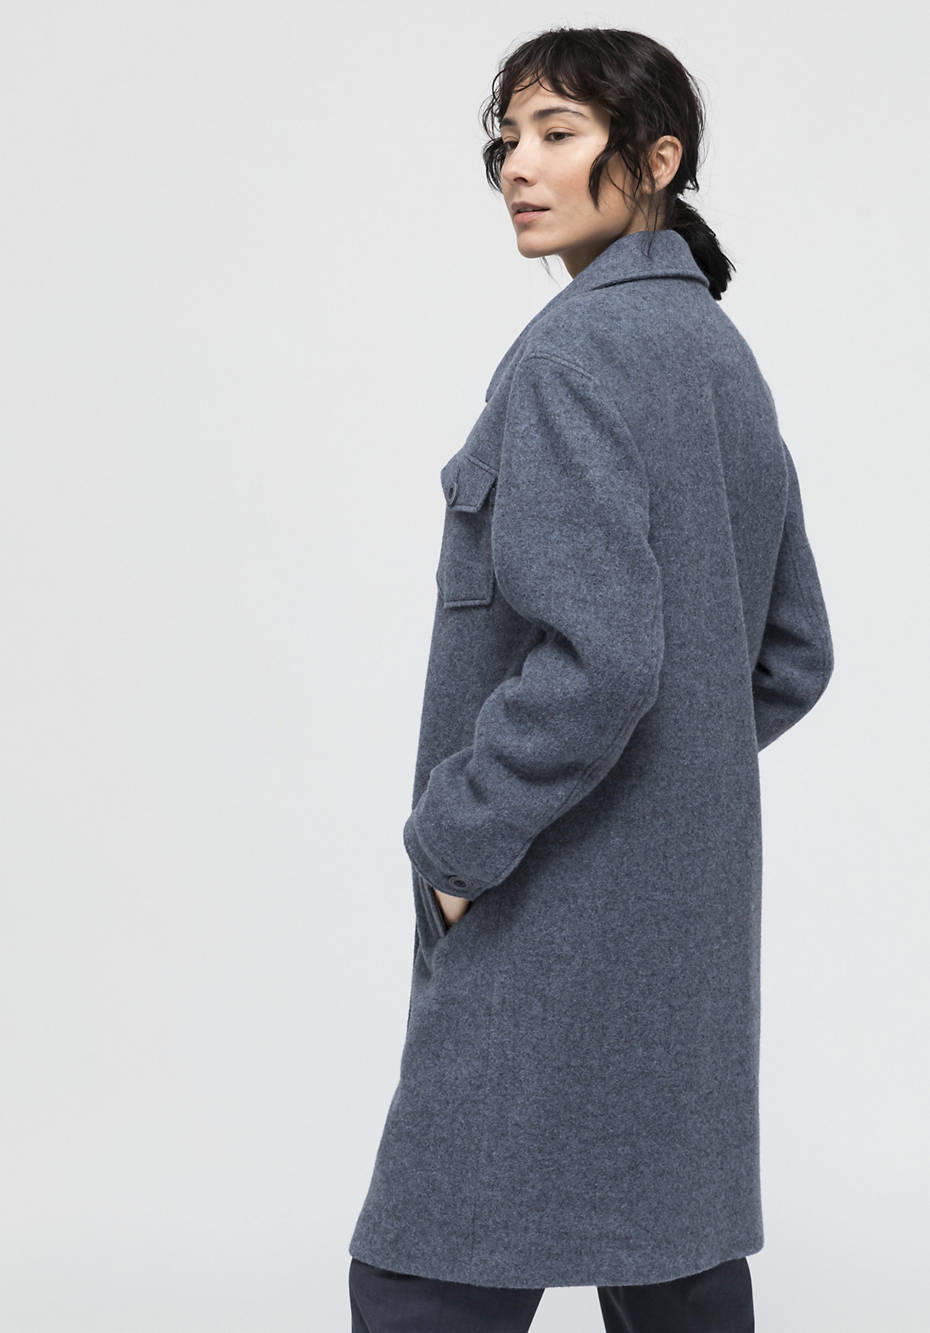 Mantel aus Alpaka und Schurwolle